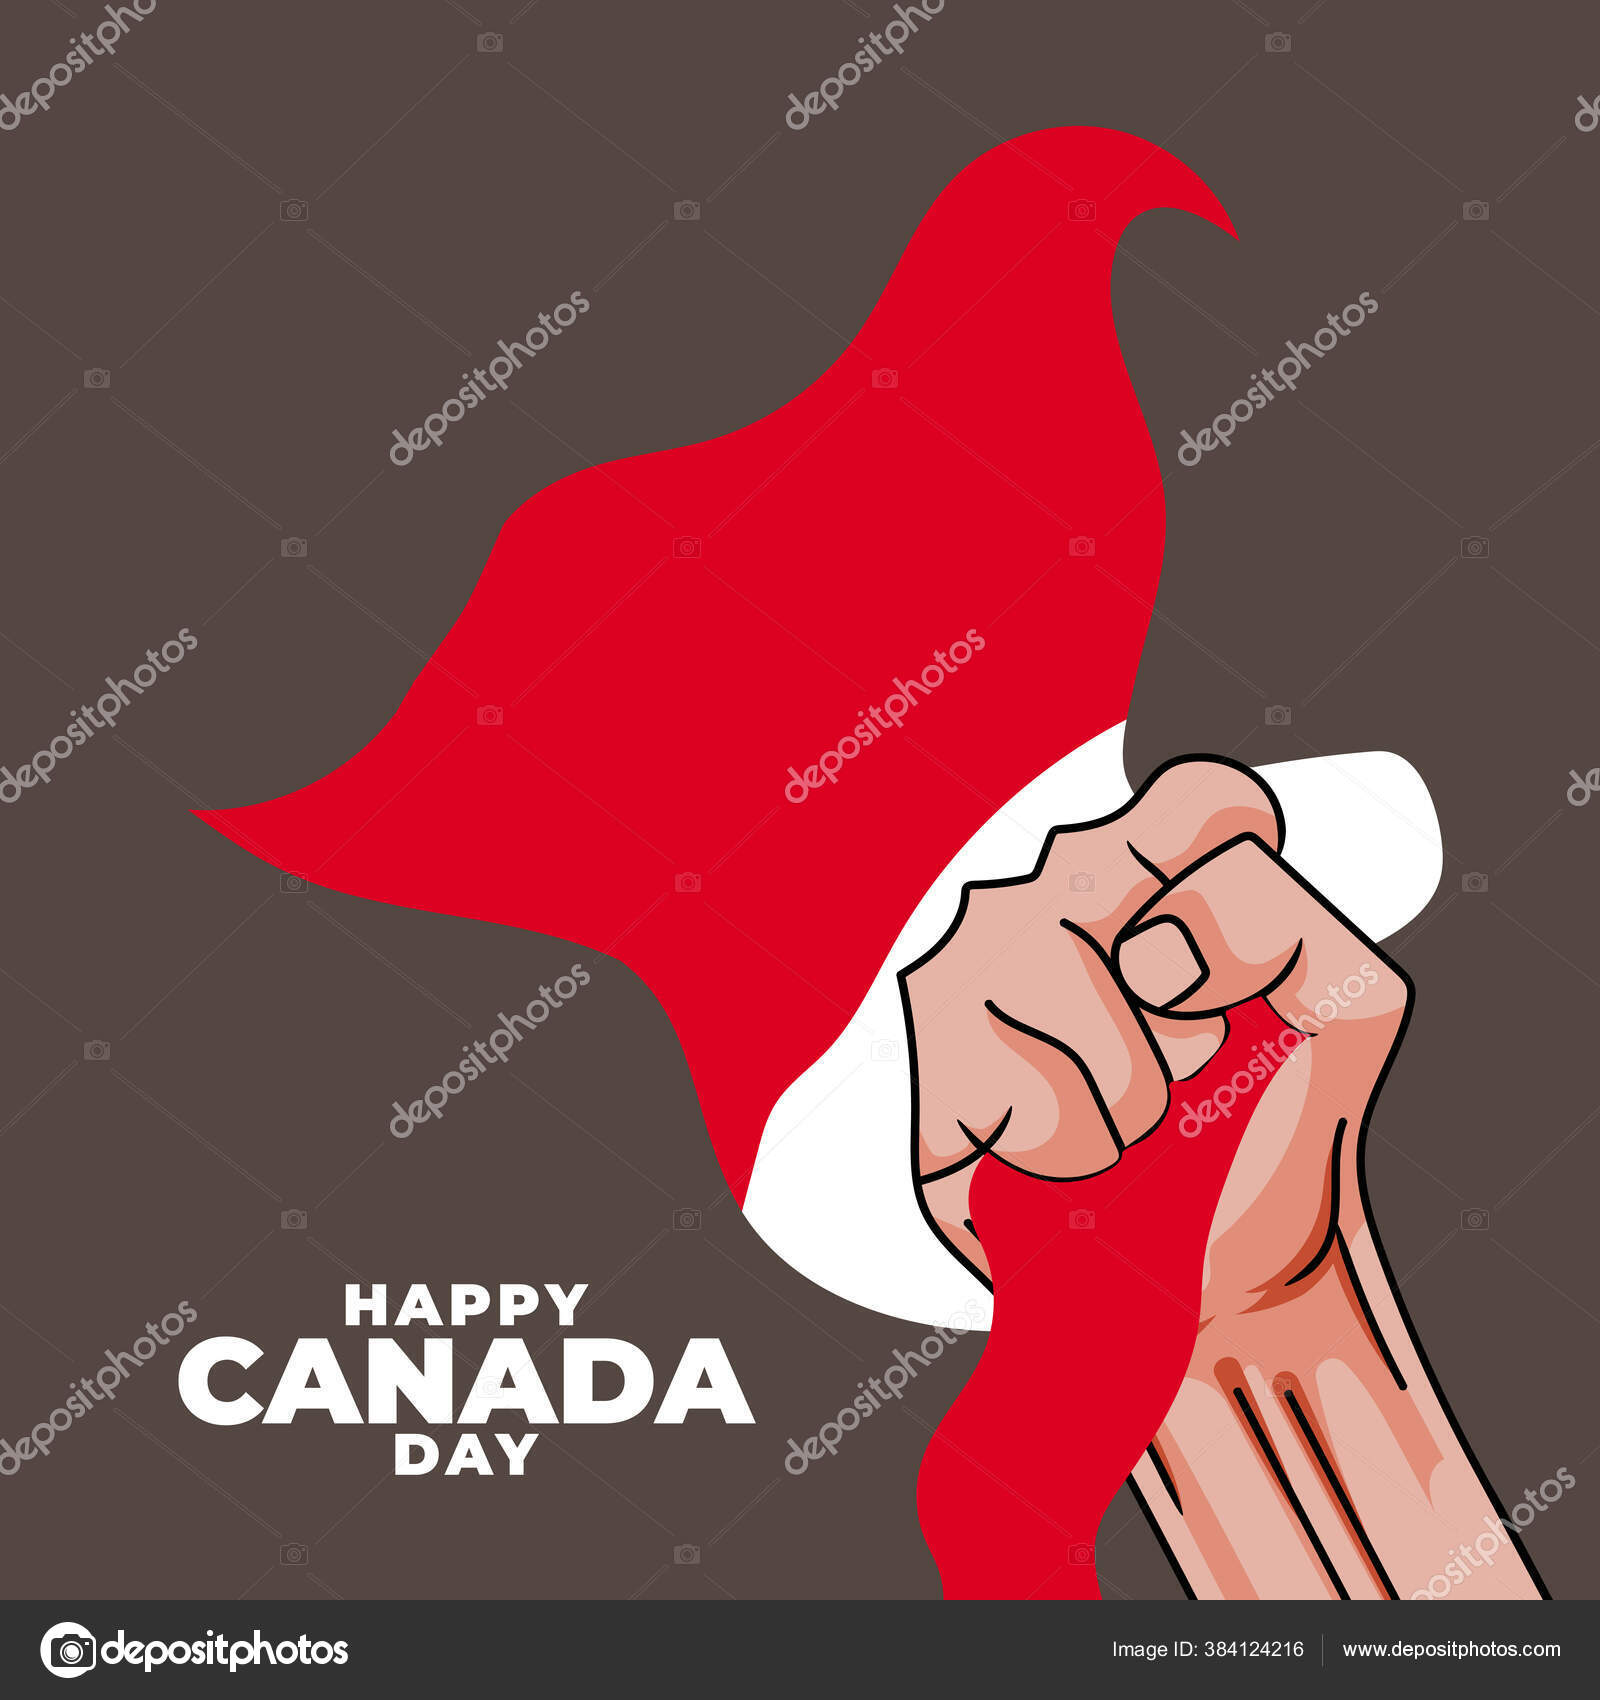 Fete Canada カナダ日 幸せな国民の休日 毎年7月1日にカナダで祝われる カナダ国旗 愛国的なポスターデザイン ベクターイラスト ストックベクター C Turnlock